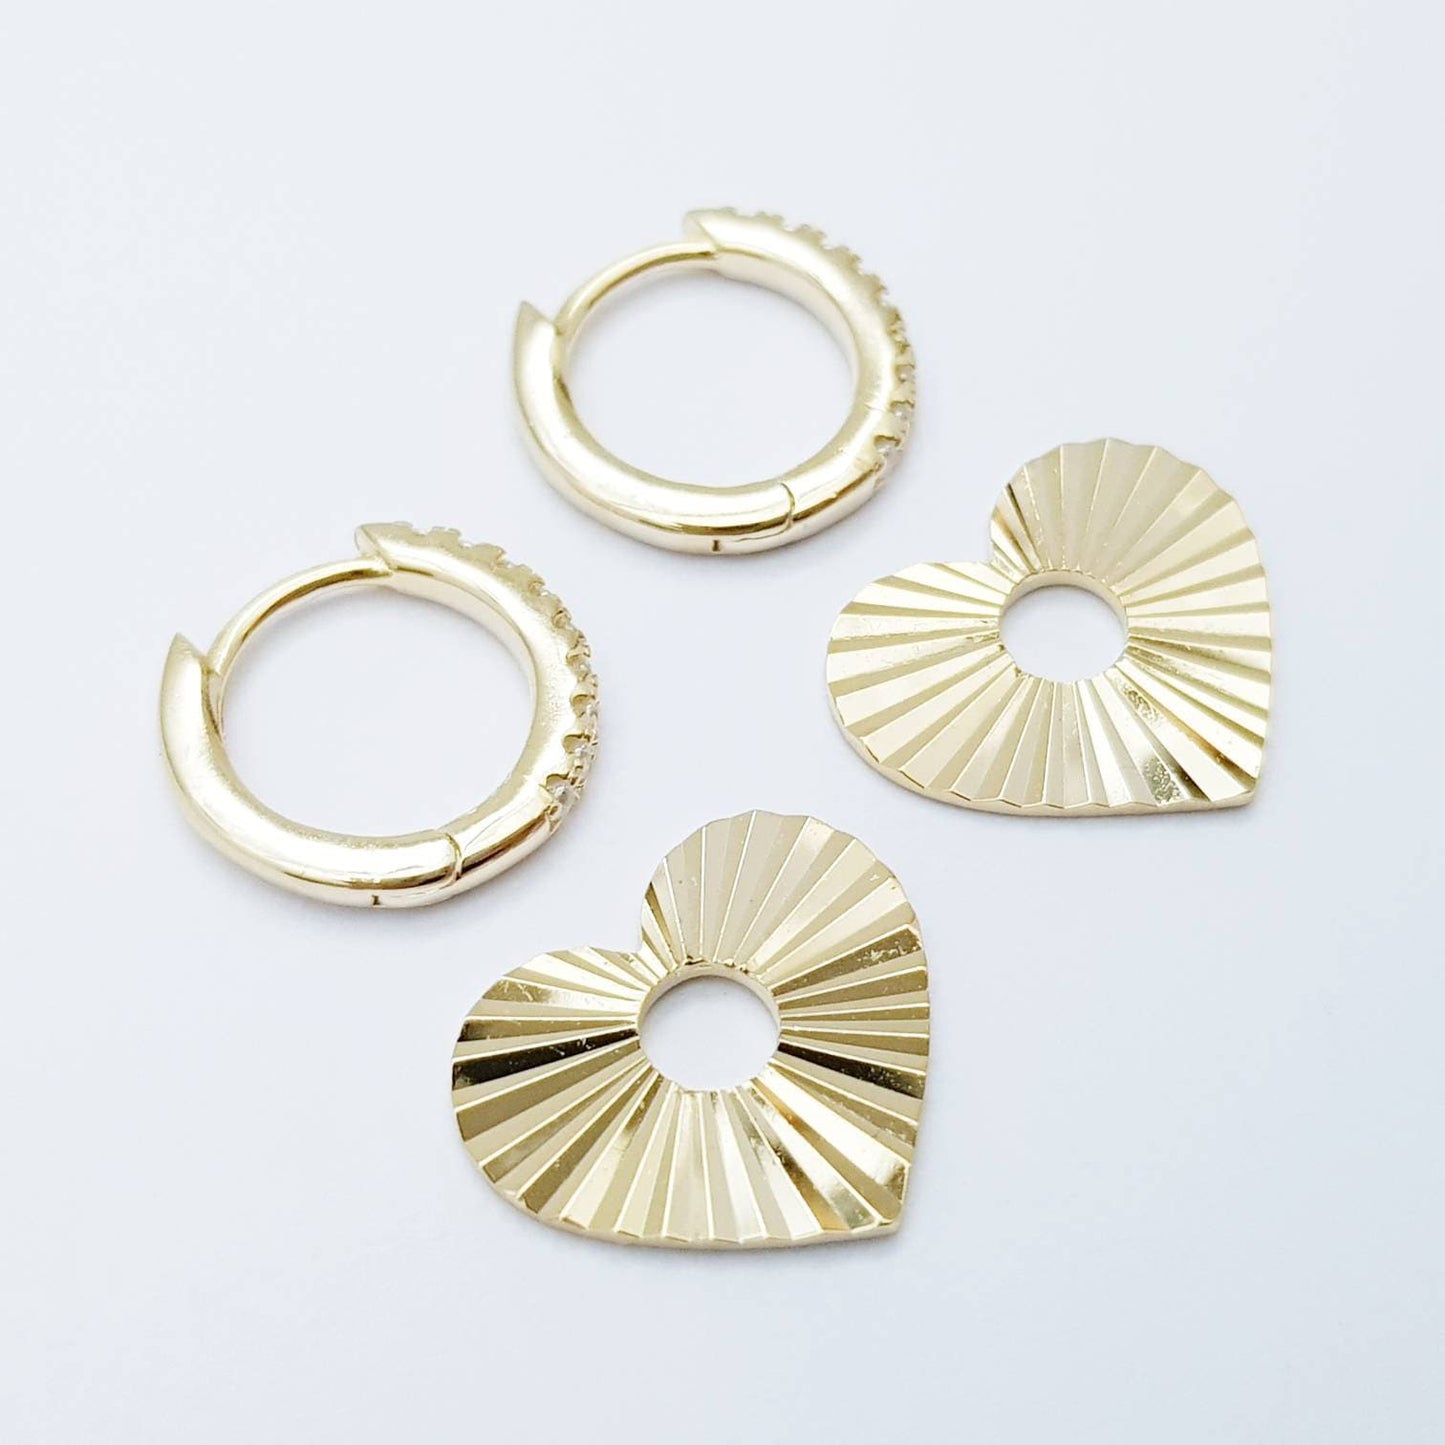 Two earrings in one, Mini hoop earrings, with removable heart charm, Small cz hoop earrings